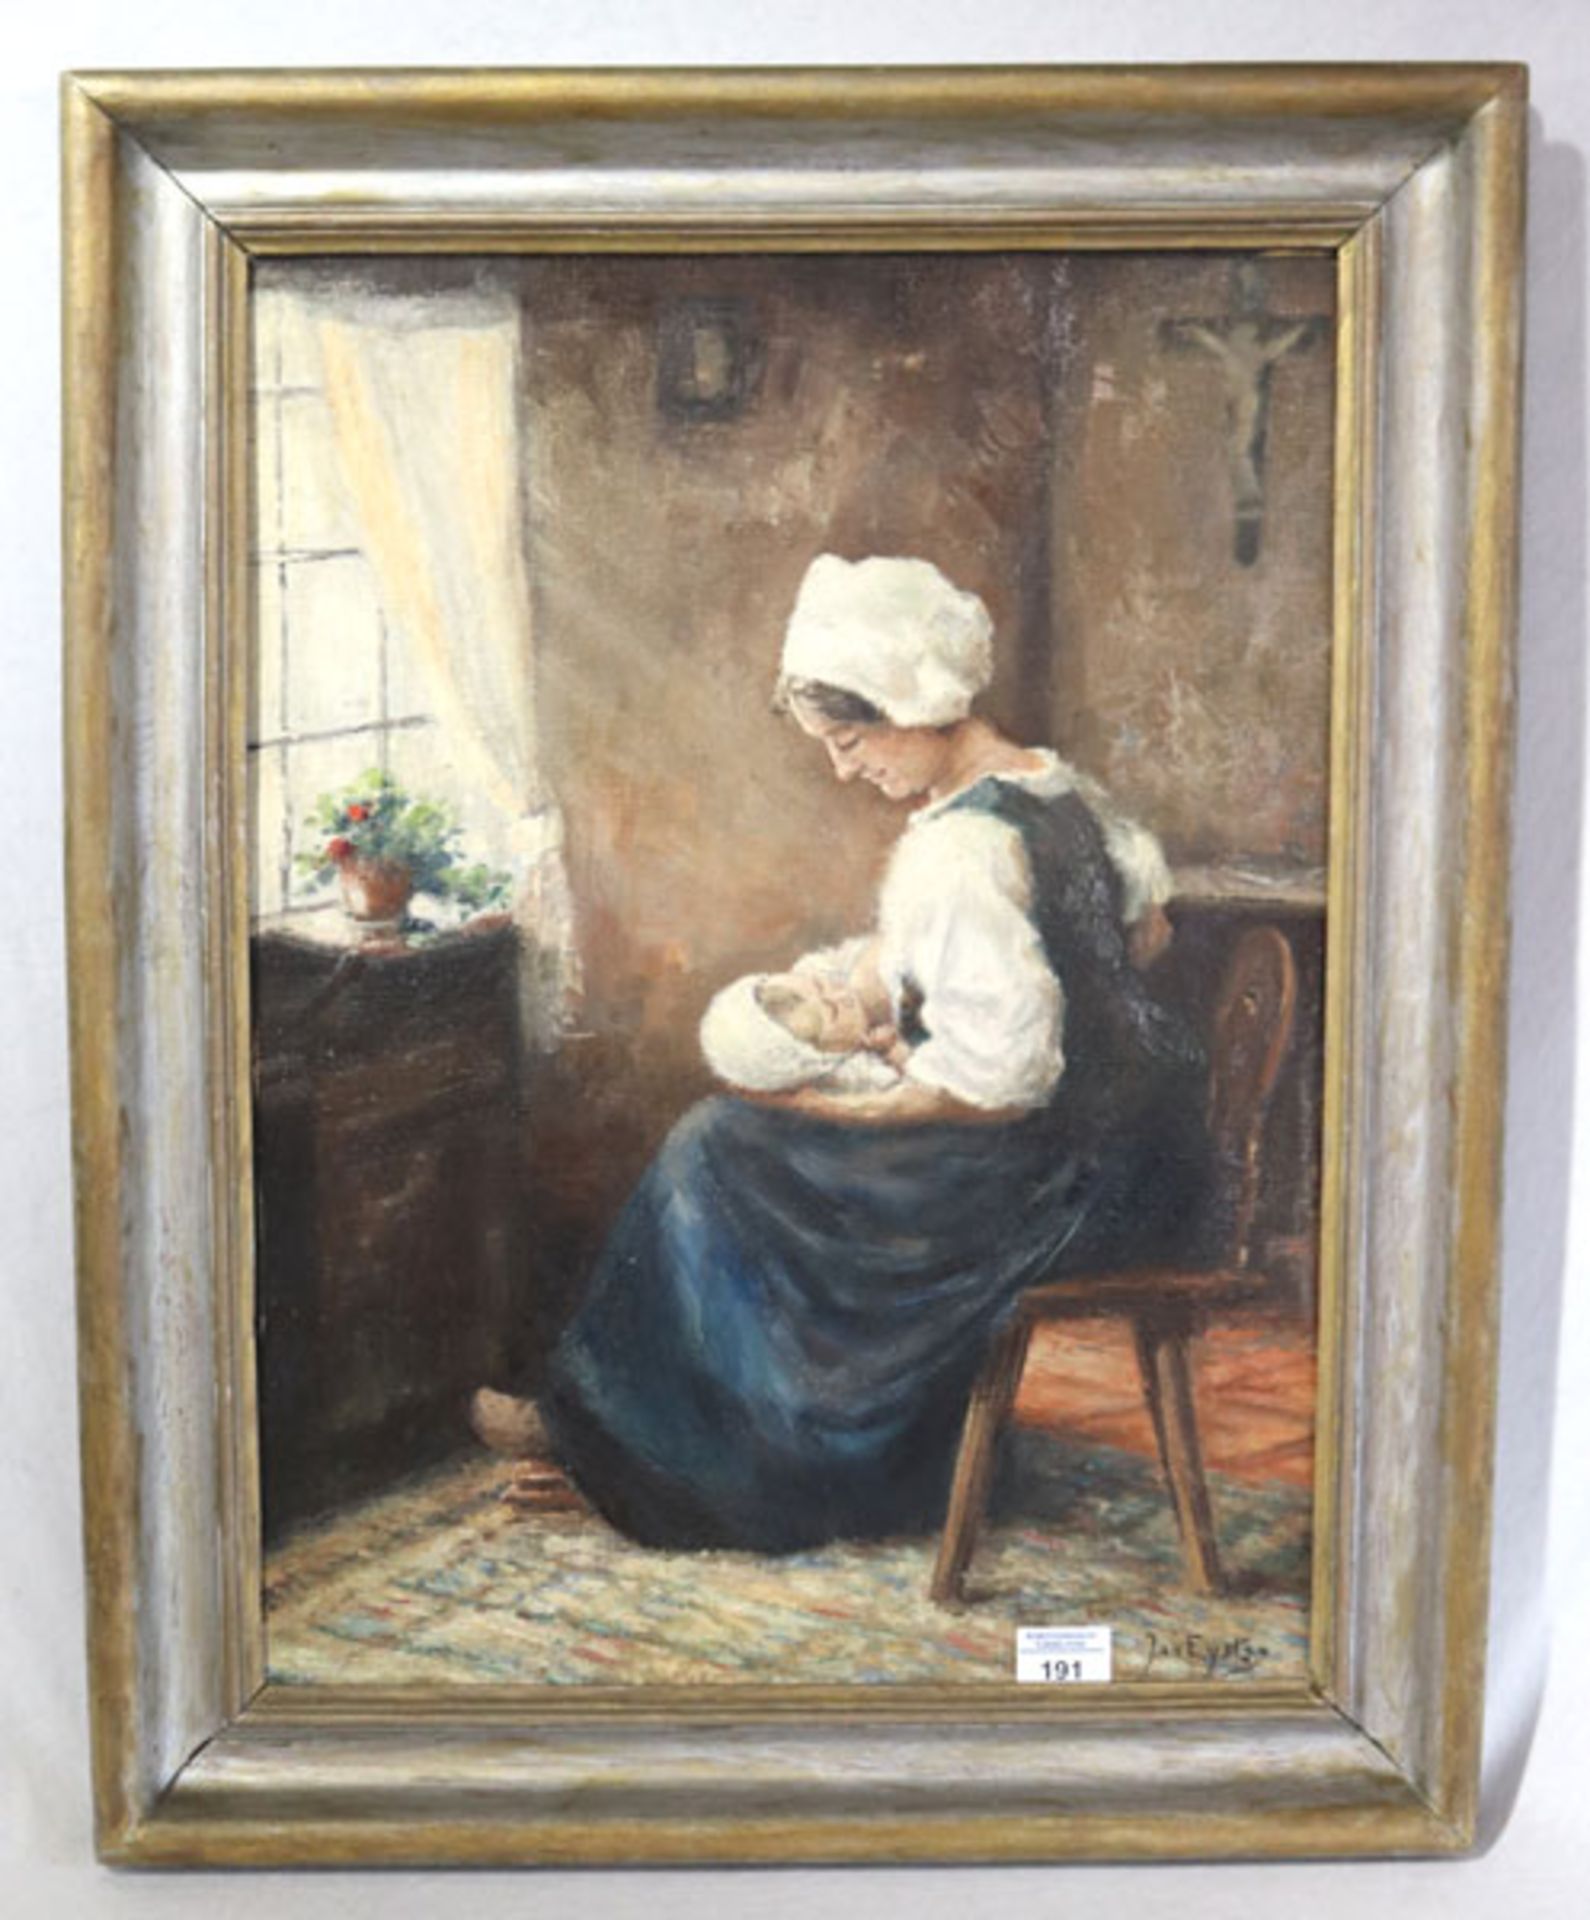 Gemälde ÖL/LW 'Mutter mit Kind', signiert Jan Eysten ?, gerahmt, Rahmen berieben, incl. Rahmen 70 cm